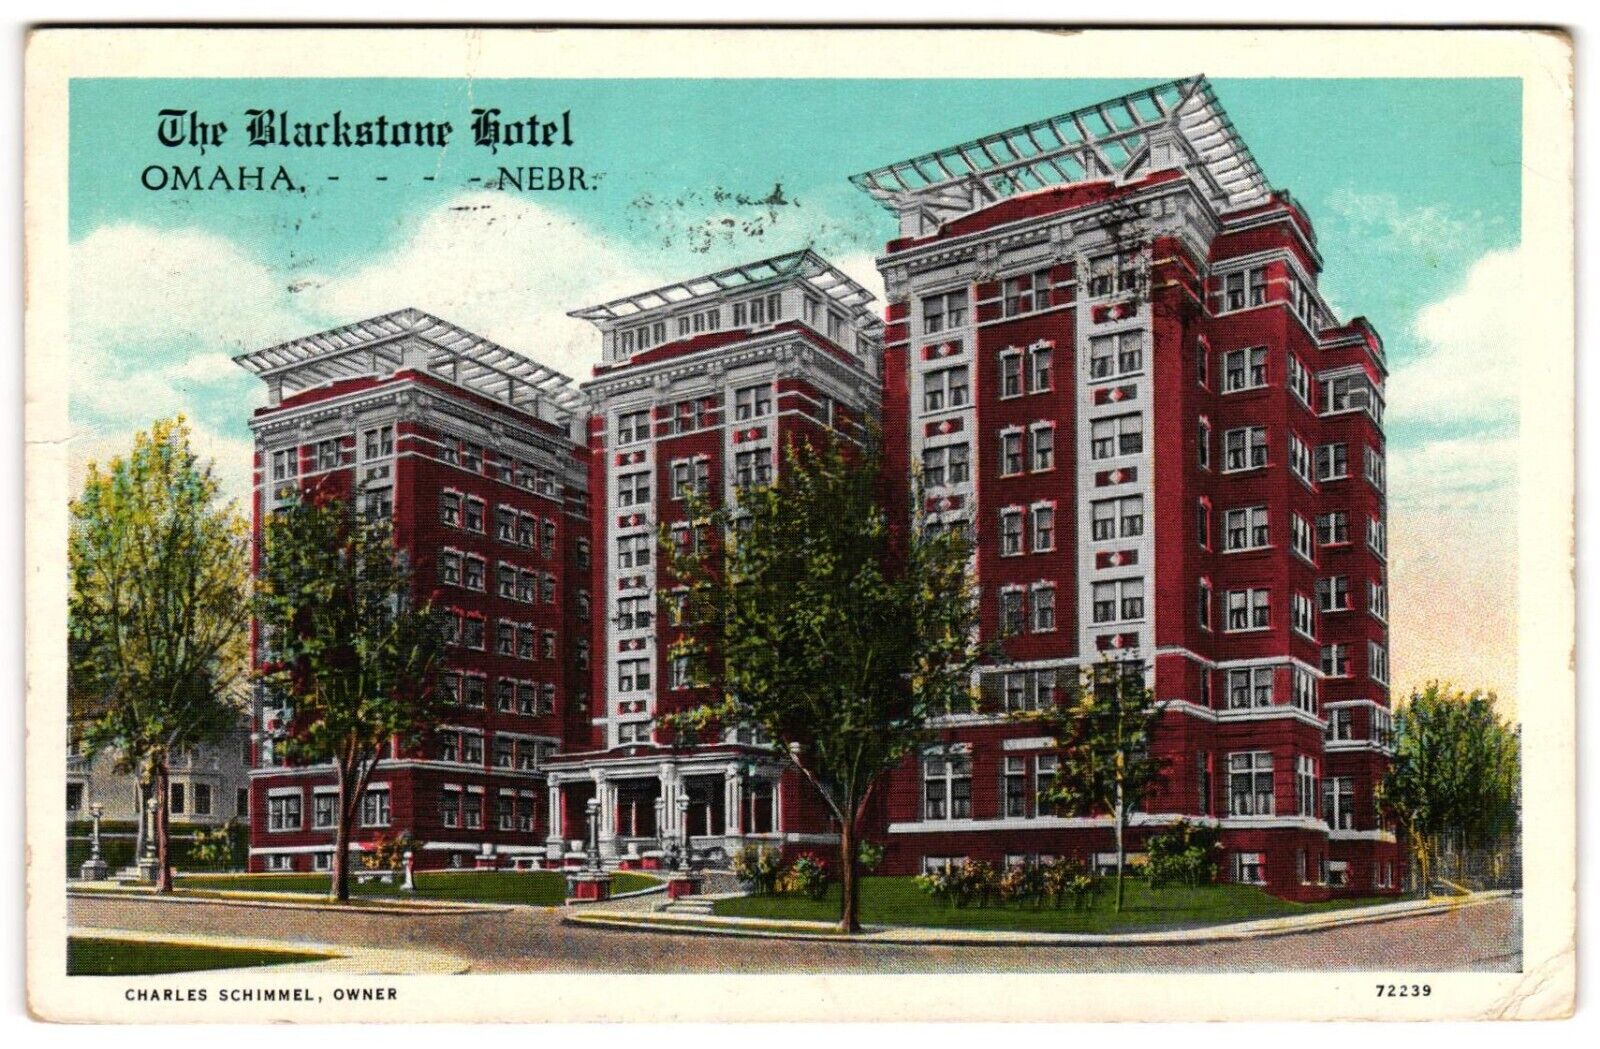 The Blackstone Hotel Omaha Nebraska NE c1930s Charles Schimmel Owner Postcard